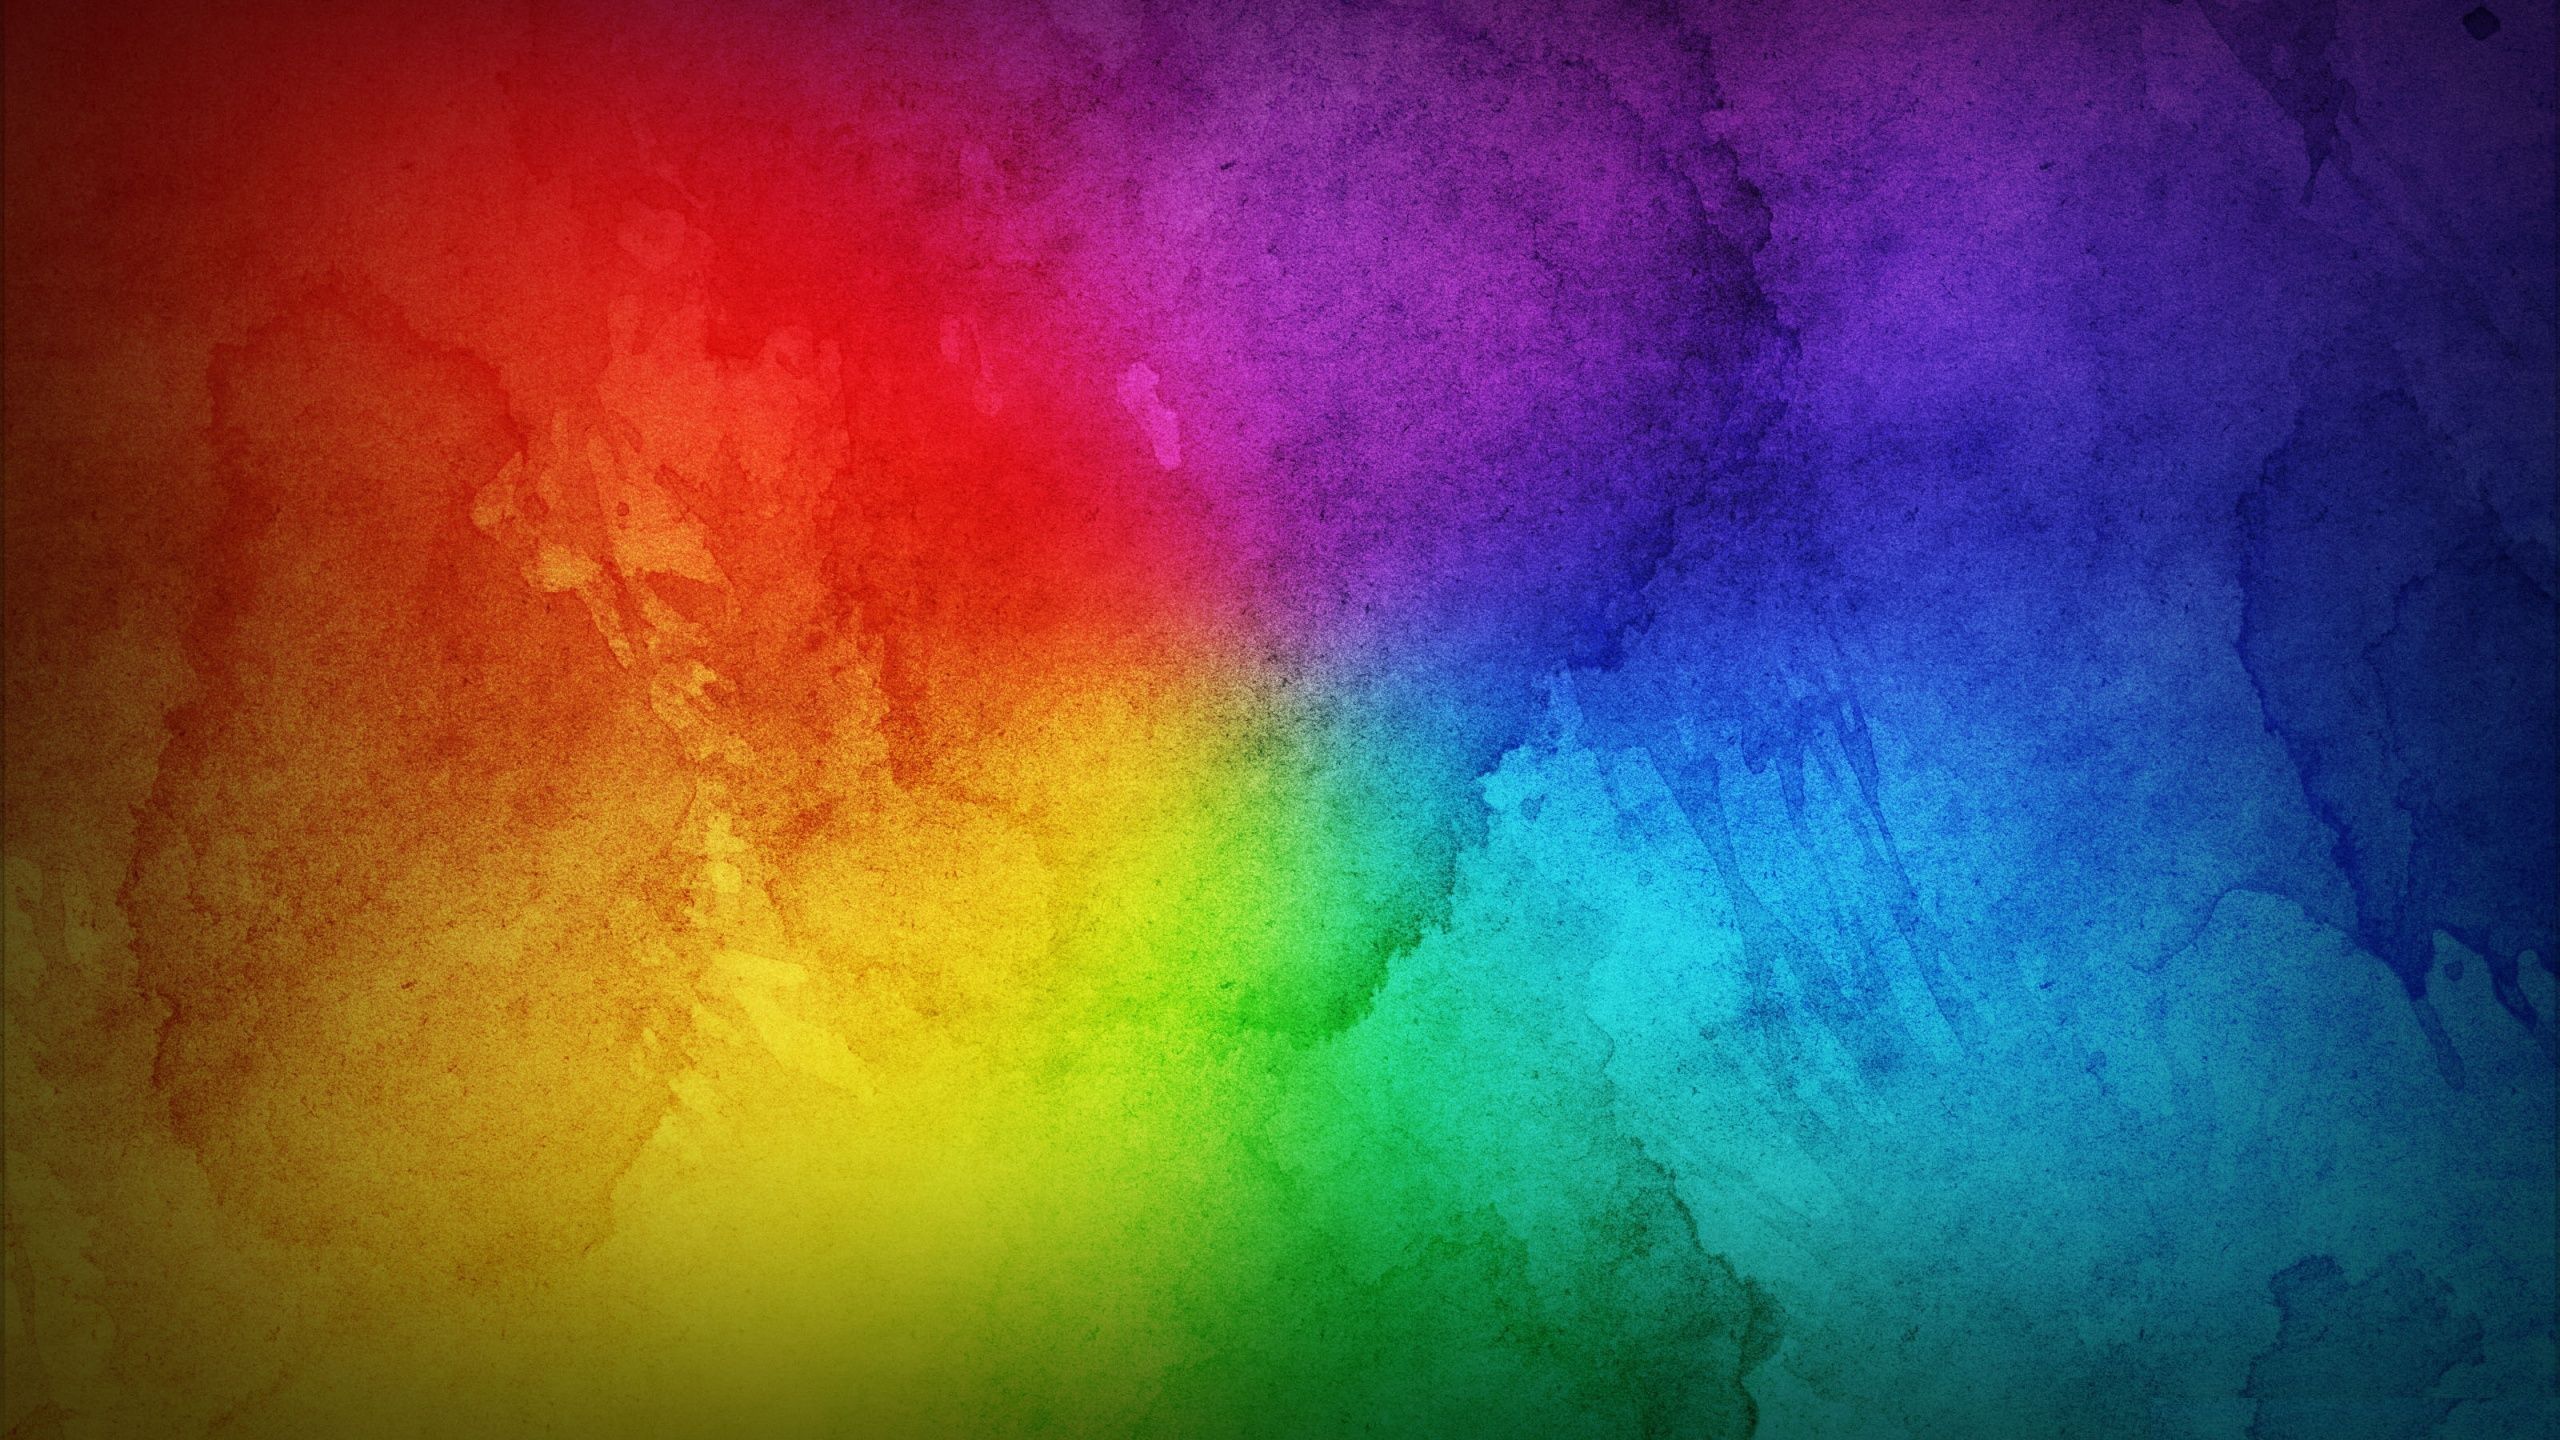 Rainbow Aesthetic Desktop Wallpaper Free Download